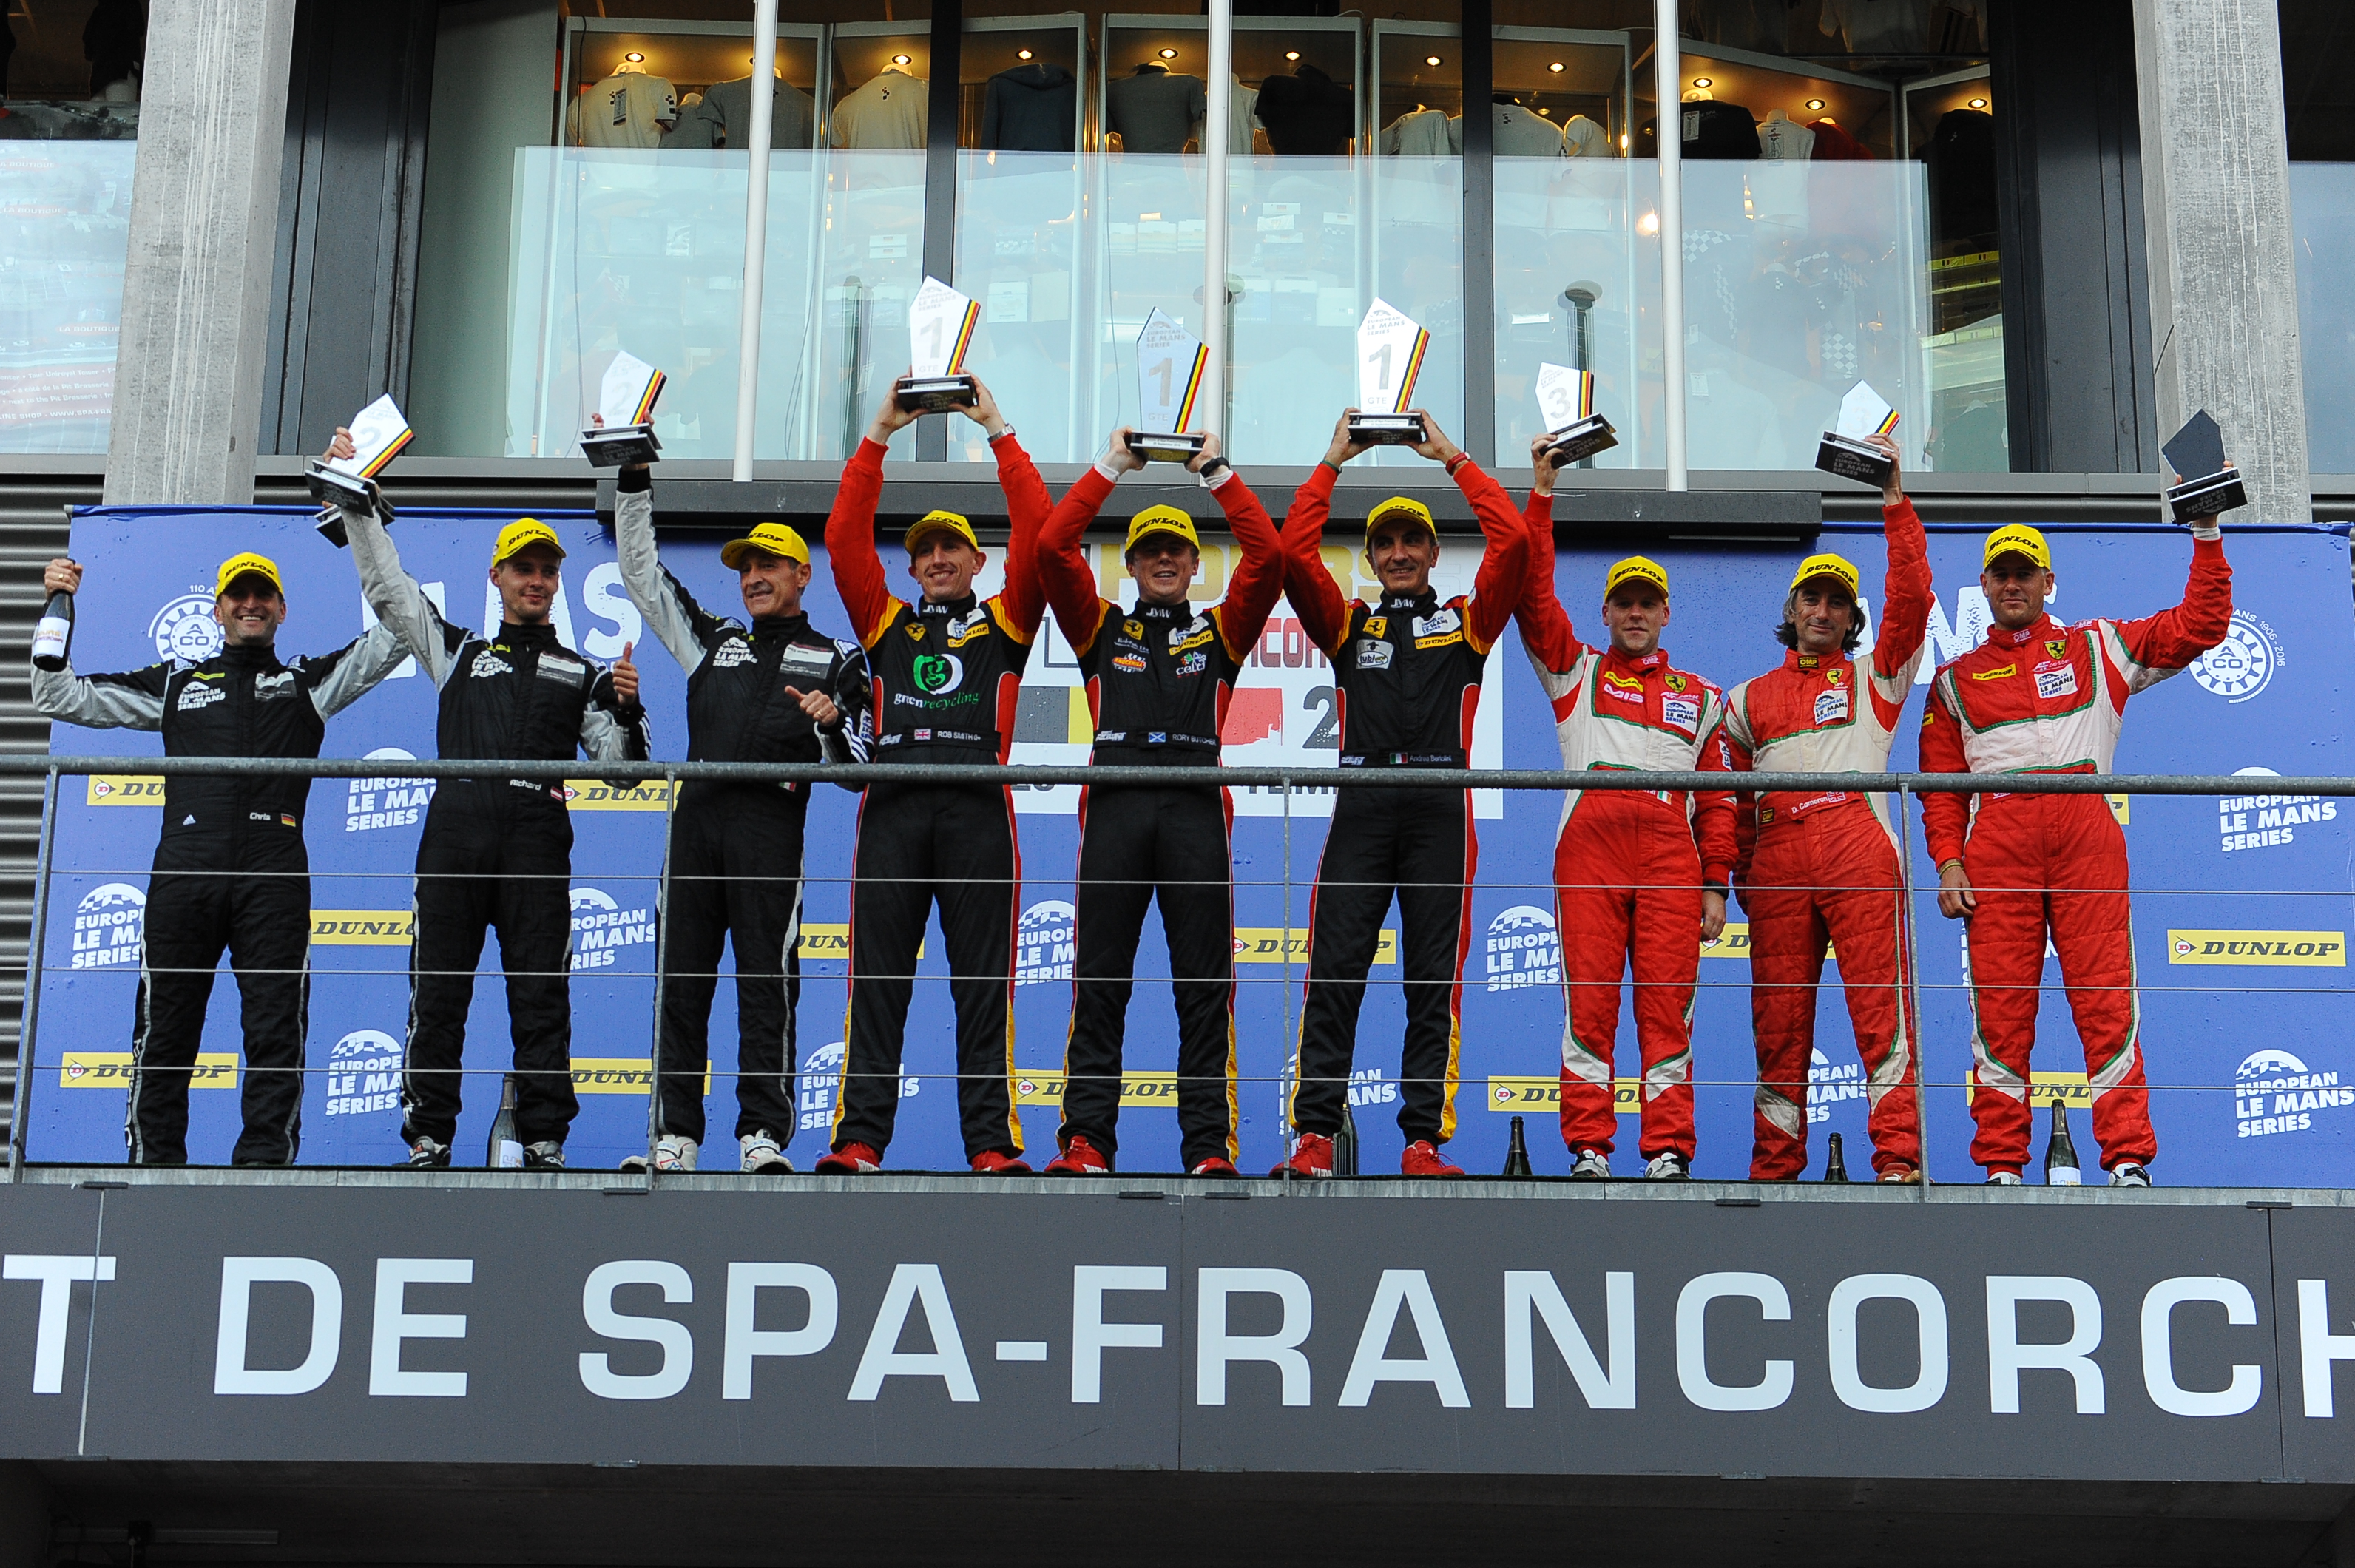 Ferrari 458 Italia, JMW Motorsport | 4 Ore di Spa-Francorchamps | Credit: Photo©AdrenalMedia.com